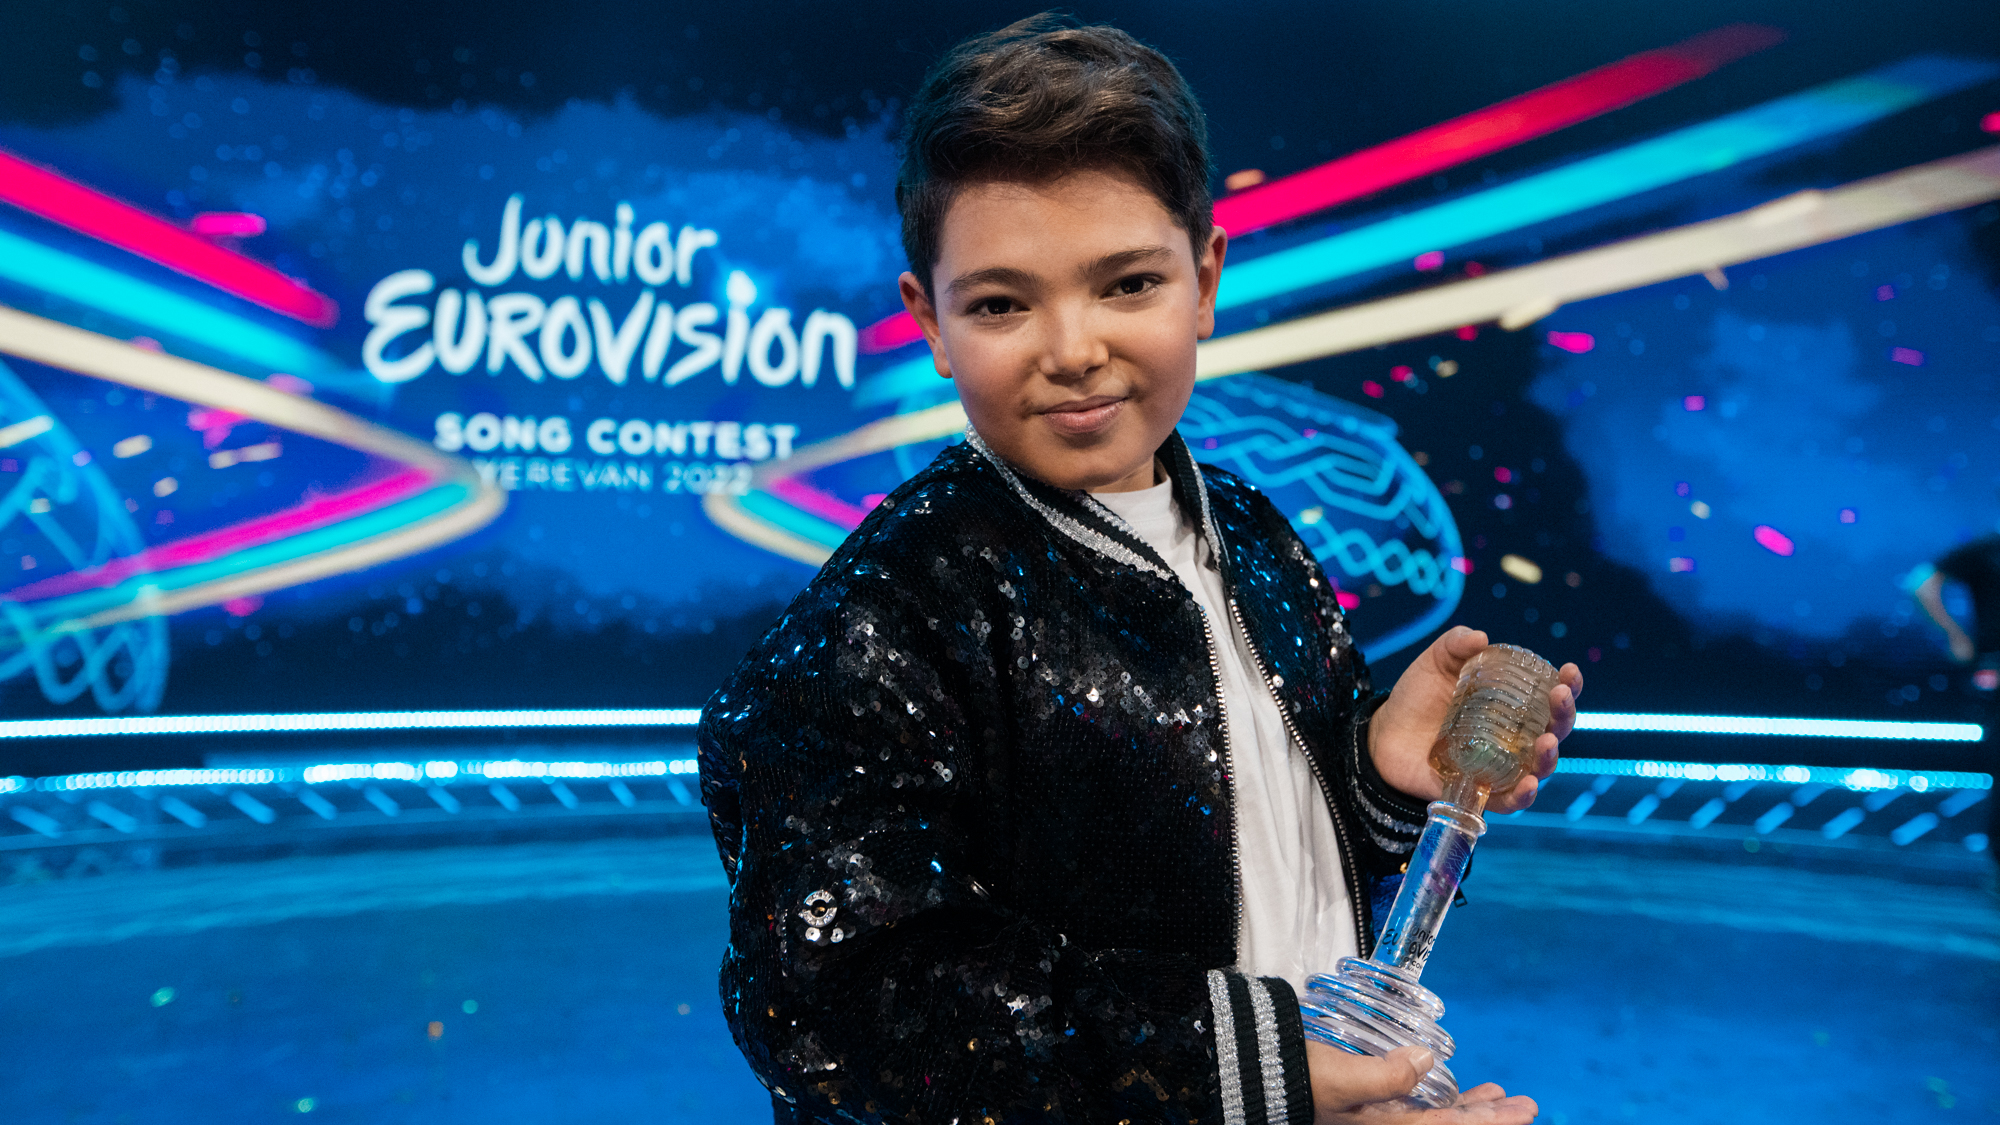 Lissandro Winner of Junior Eurovision 2022 France